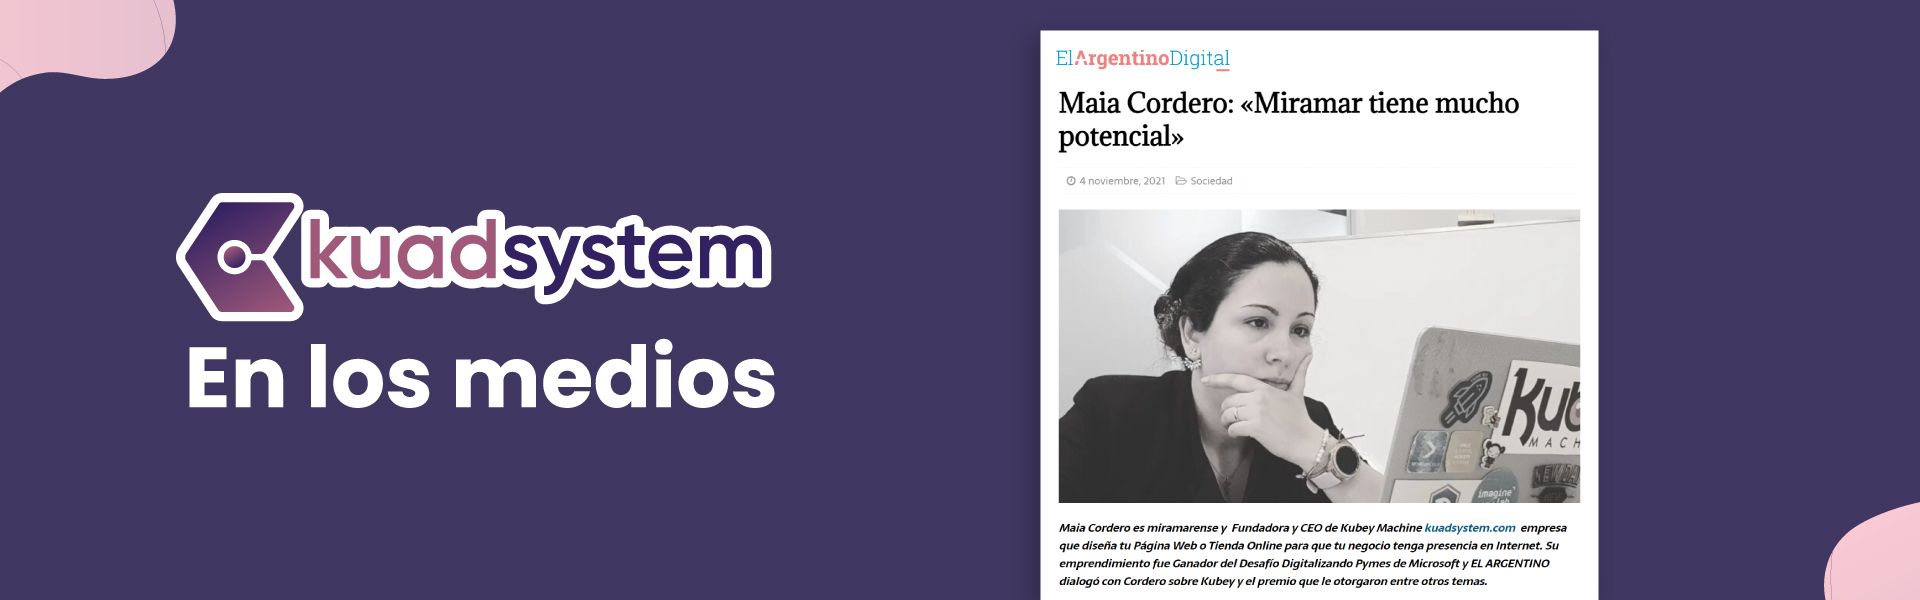 Nuestra CEO Maia Cordero entrevistada por el diario EL ARGENTINO thumbnail